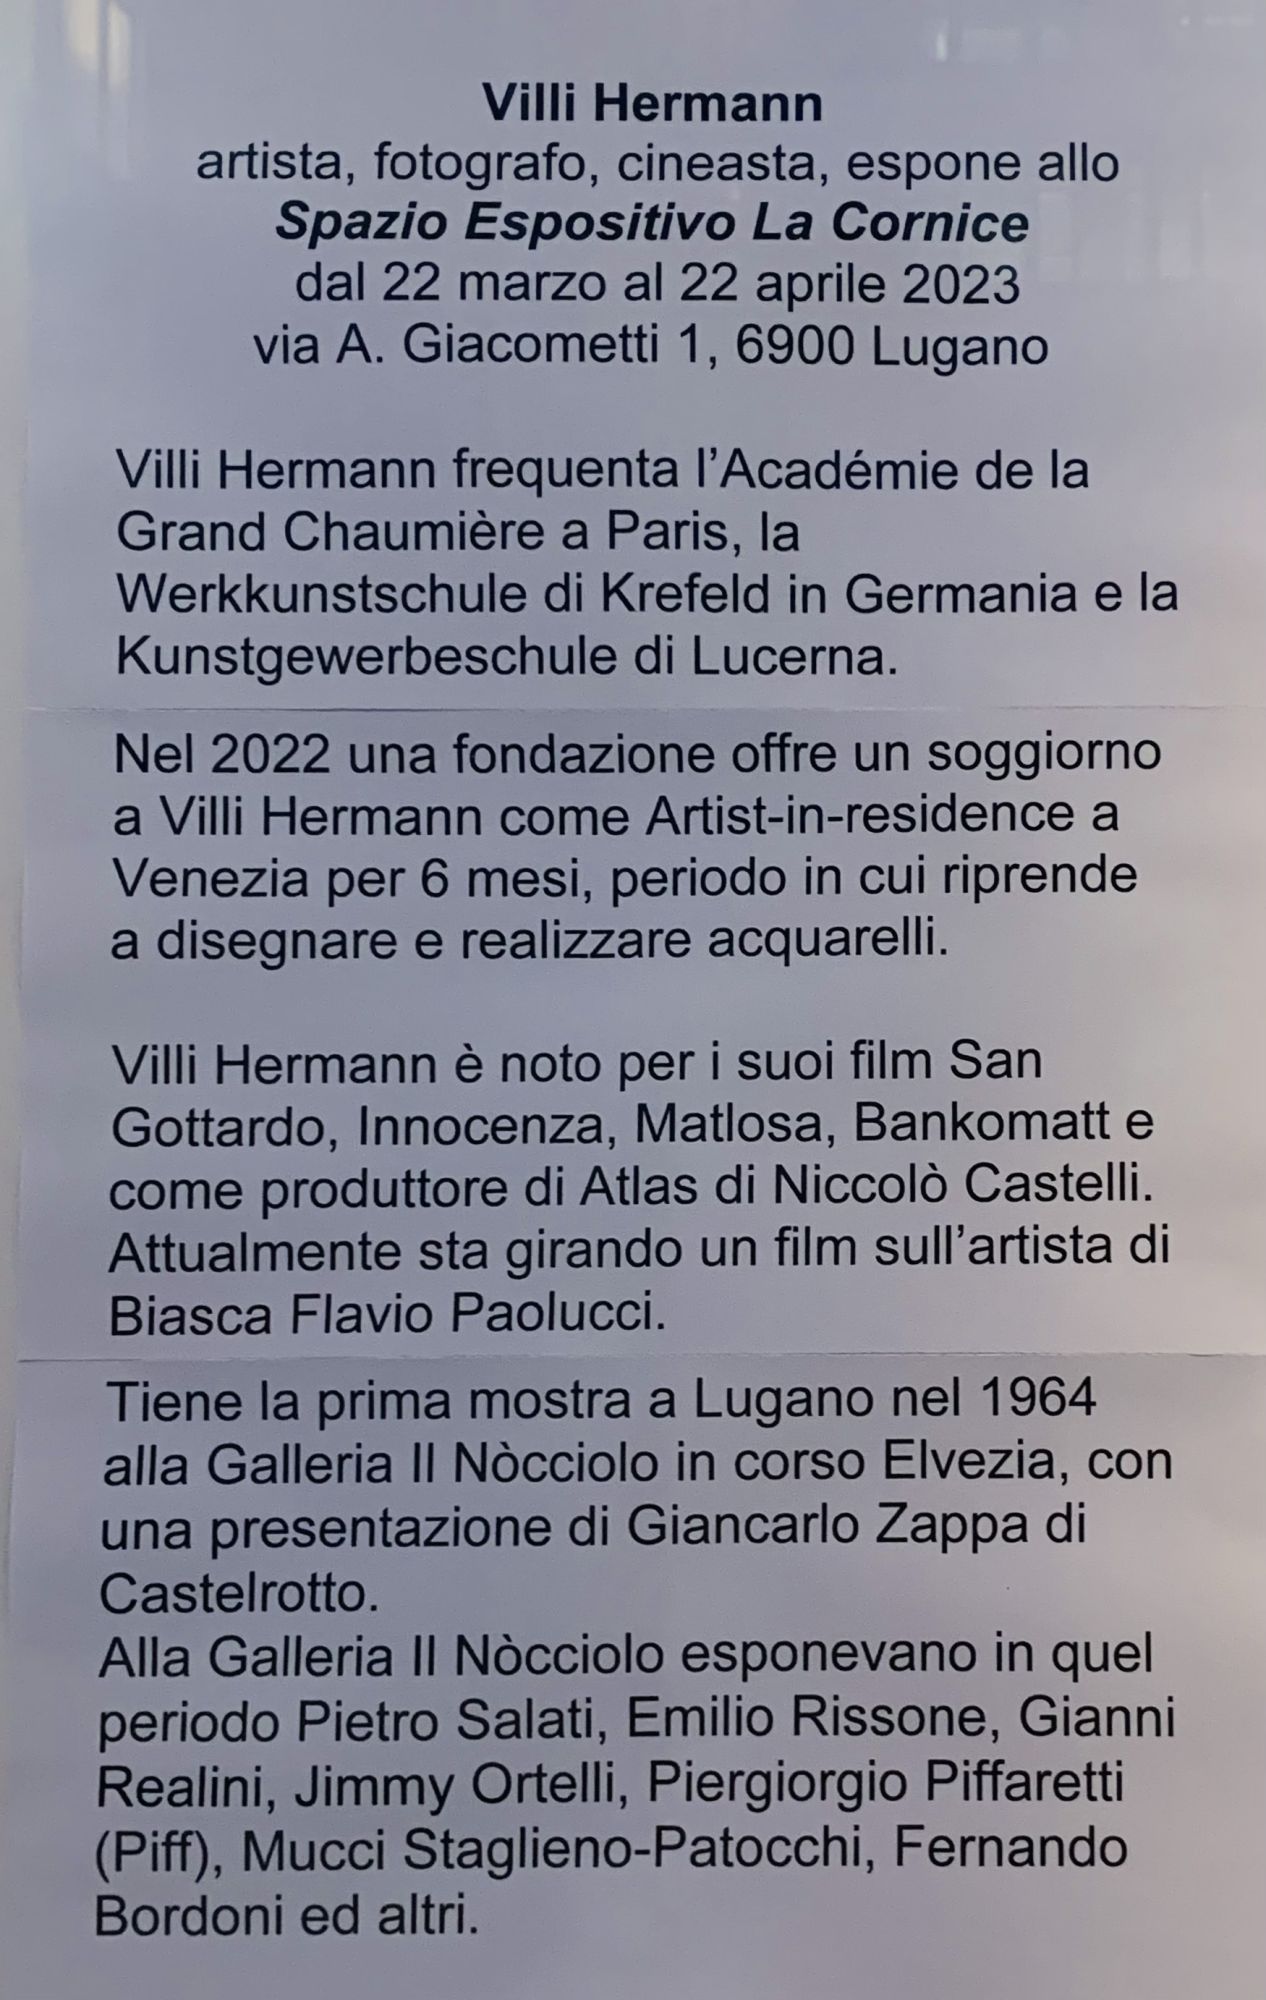 Mostra di Villi Hermann allo Spazio Espositivo "La Cornice" di Lugano dal 22 marzo al 22 aprile 2023